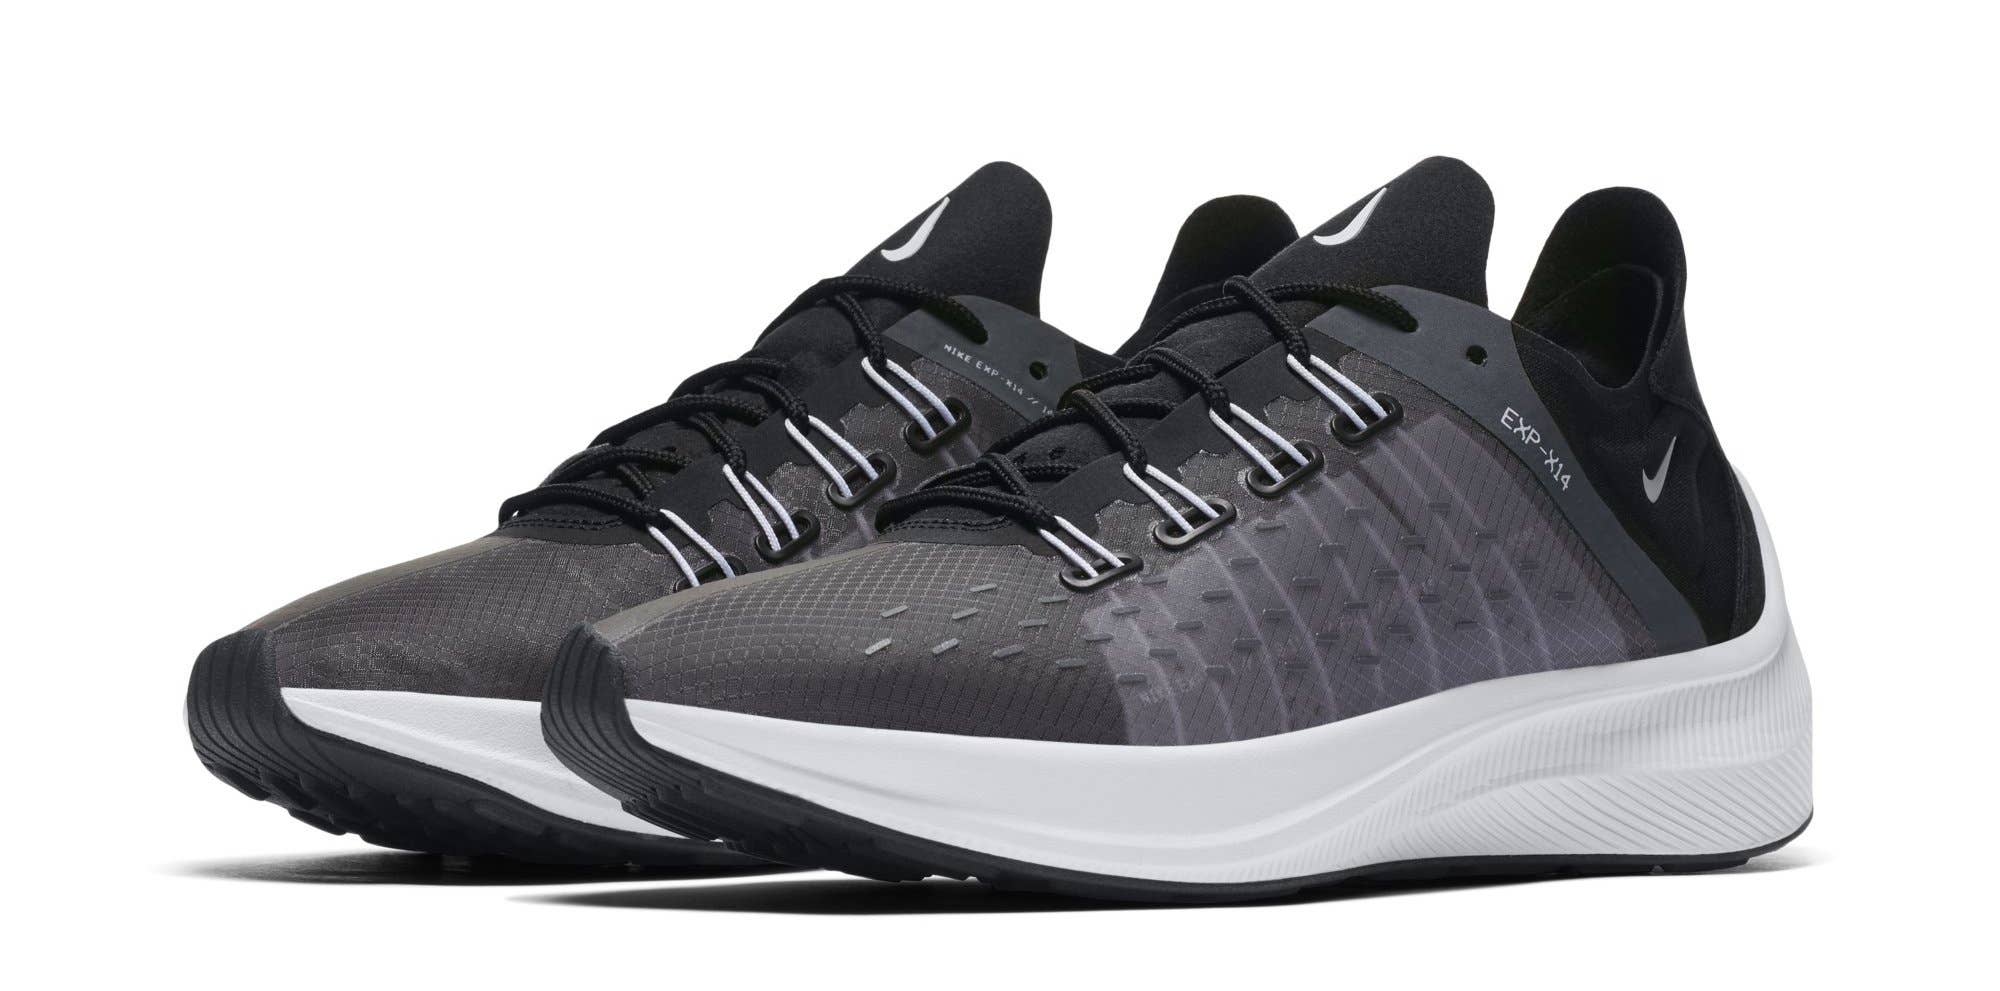 Nike WMNS EXP X14 'Black/White/Wolf Grey' AO3170 001 (Pair)